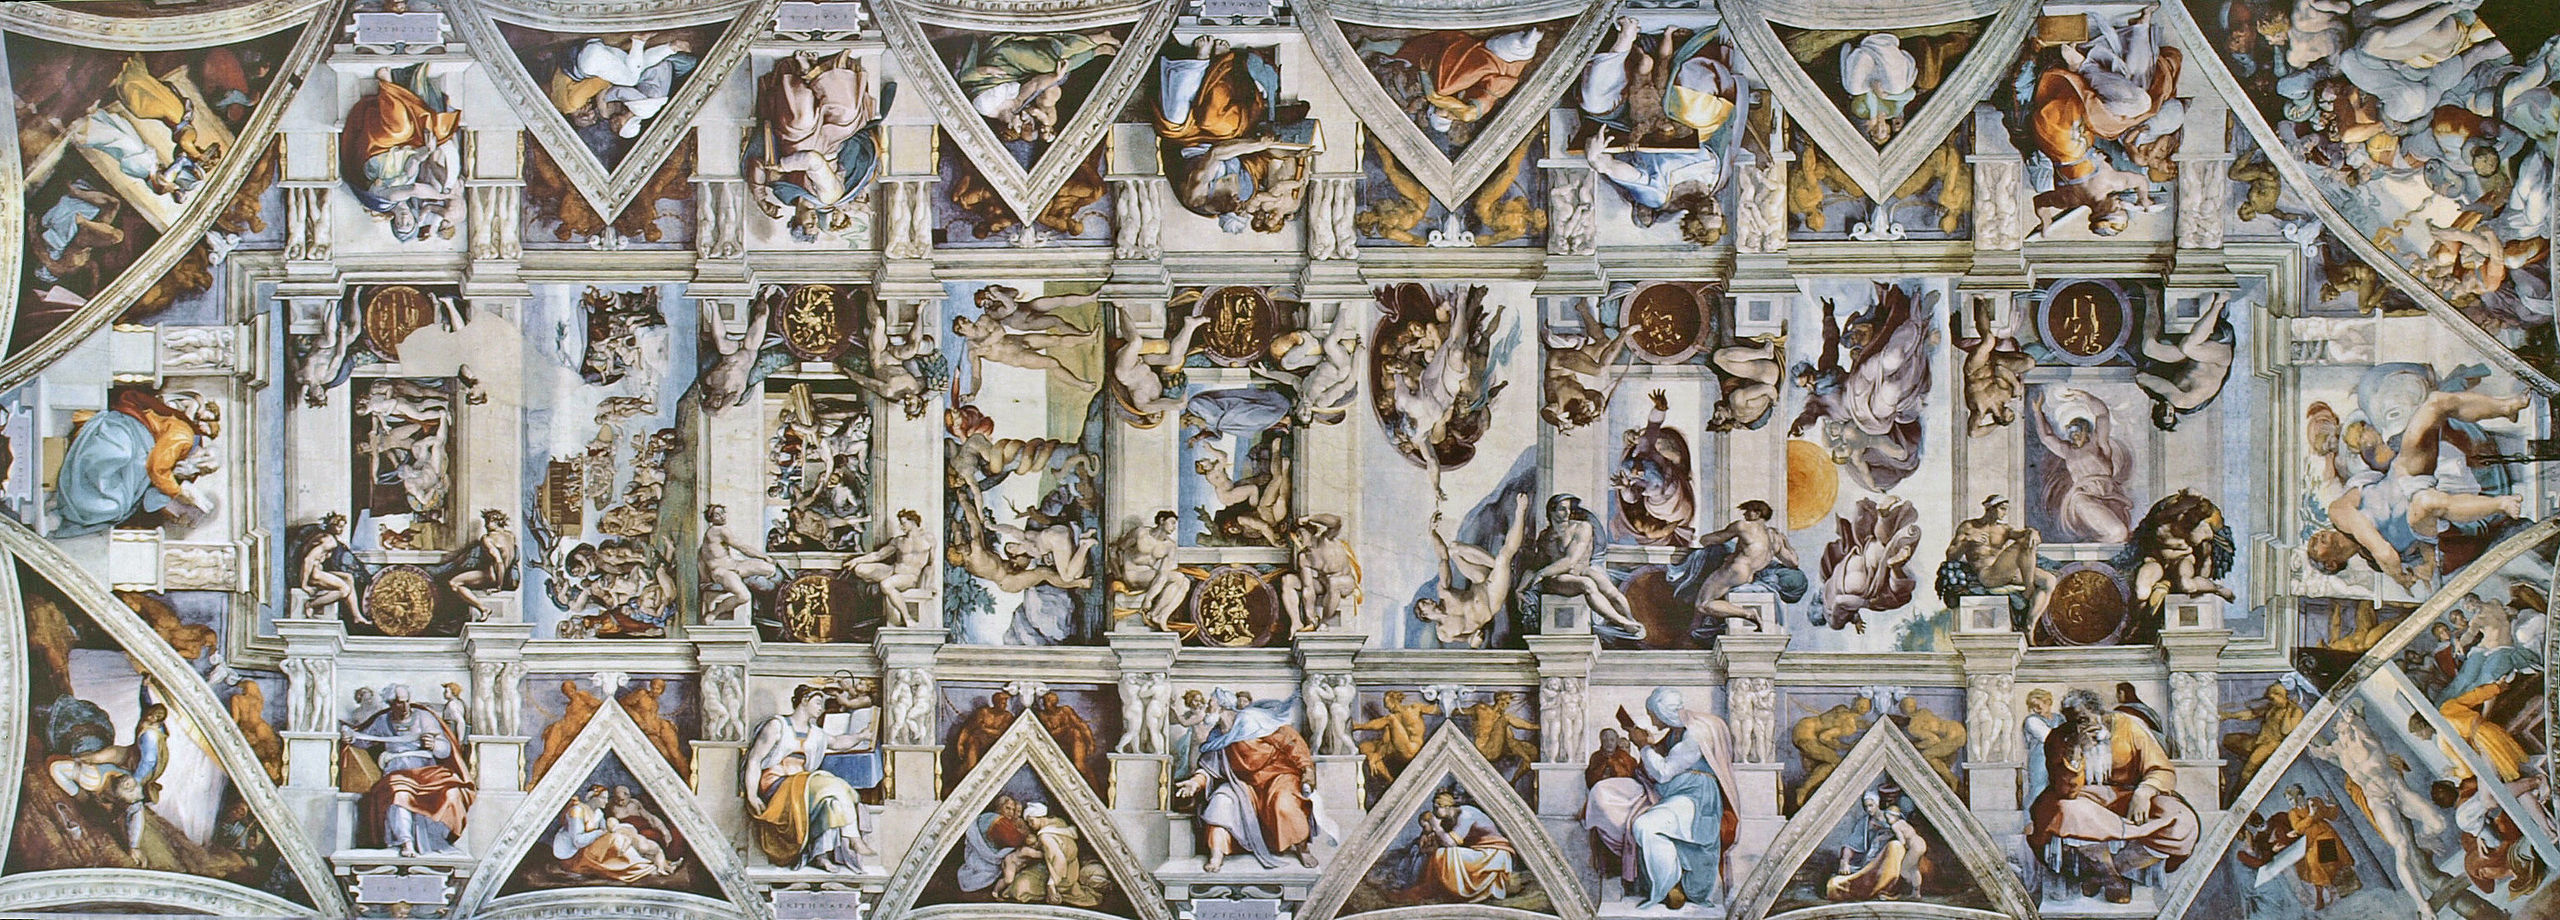 梵蒂冈西斯廷教堂天顶画《创世纪》(genesis)全景,1508-12,40m x 14m